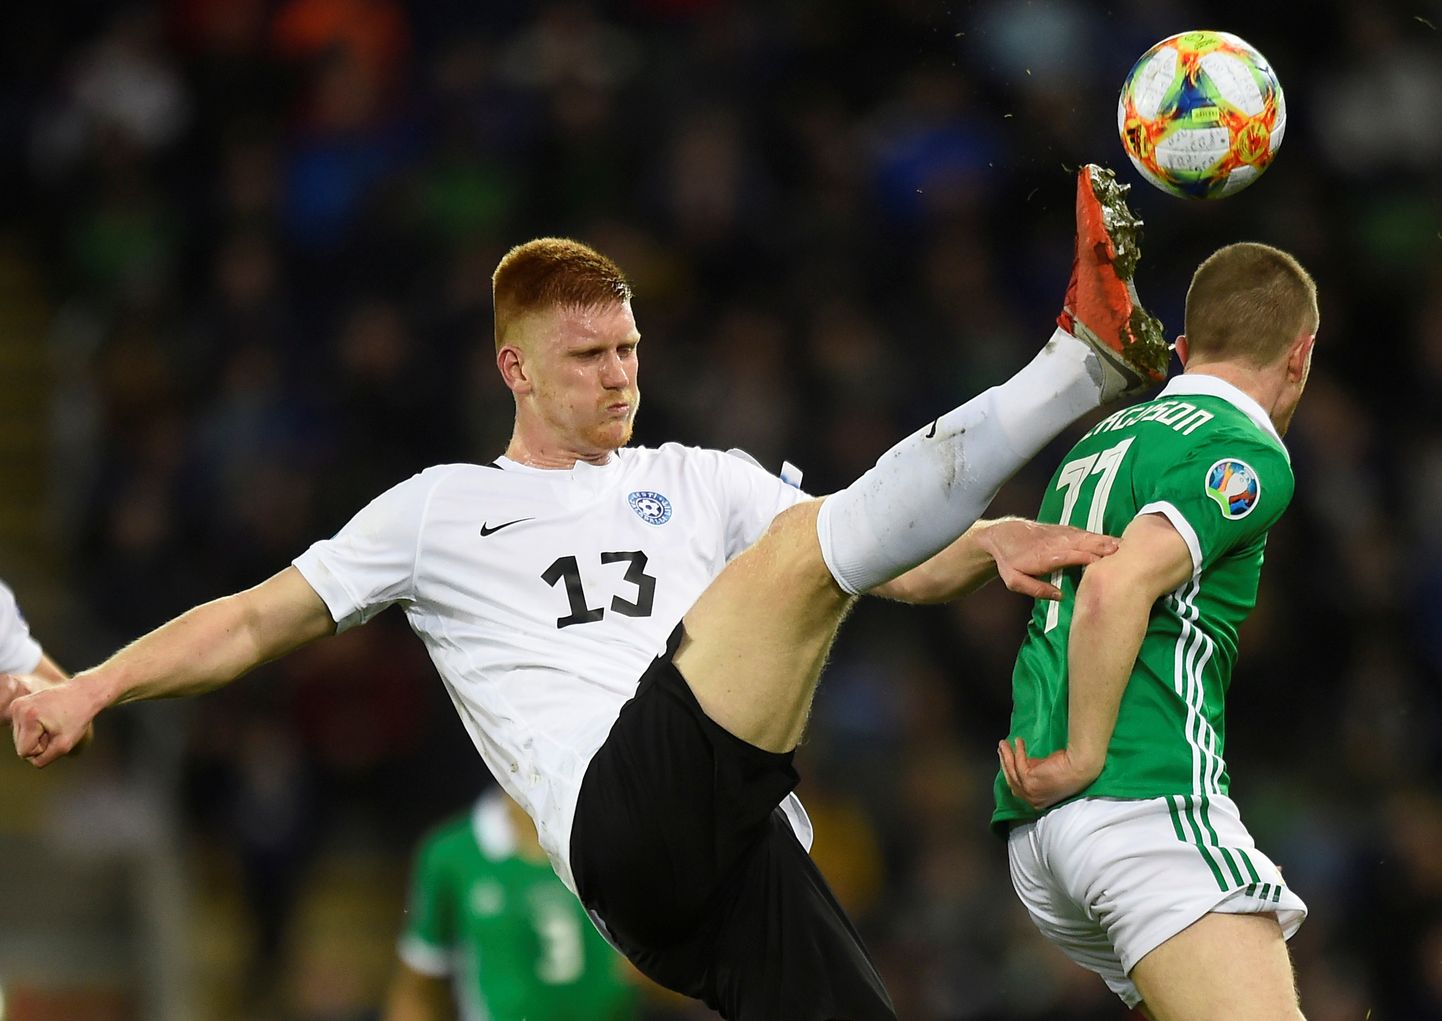 Eesti jalgpallikoondis alustas 2020. aasta EM-valiksarja võõrsil 0:2 kaotusega Põhja-Iirimaale, kelle fännid tulevad ka Eestisse oma rahvusmeeskonnale pöialt hoidma.